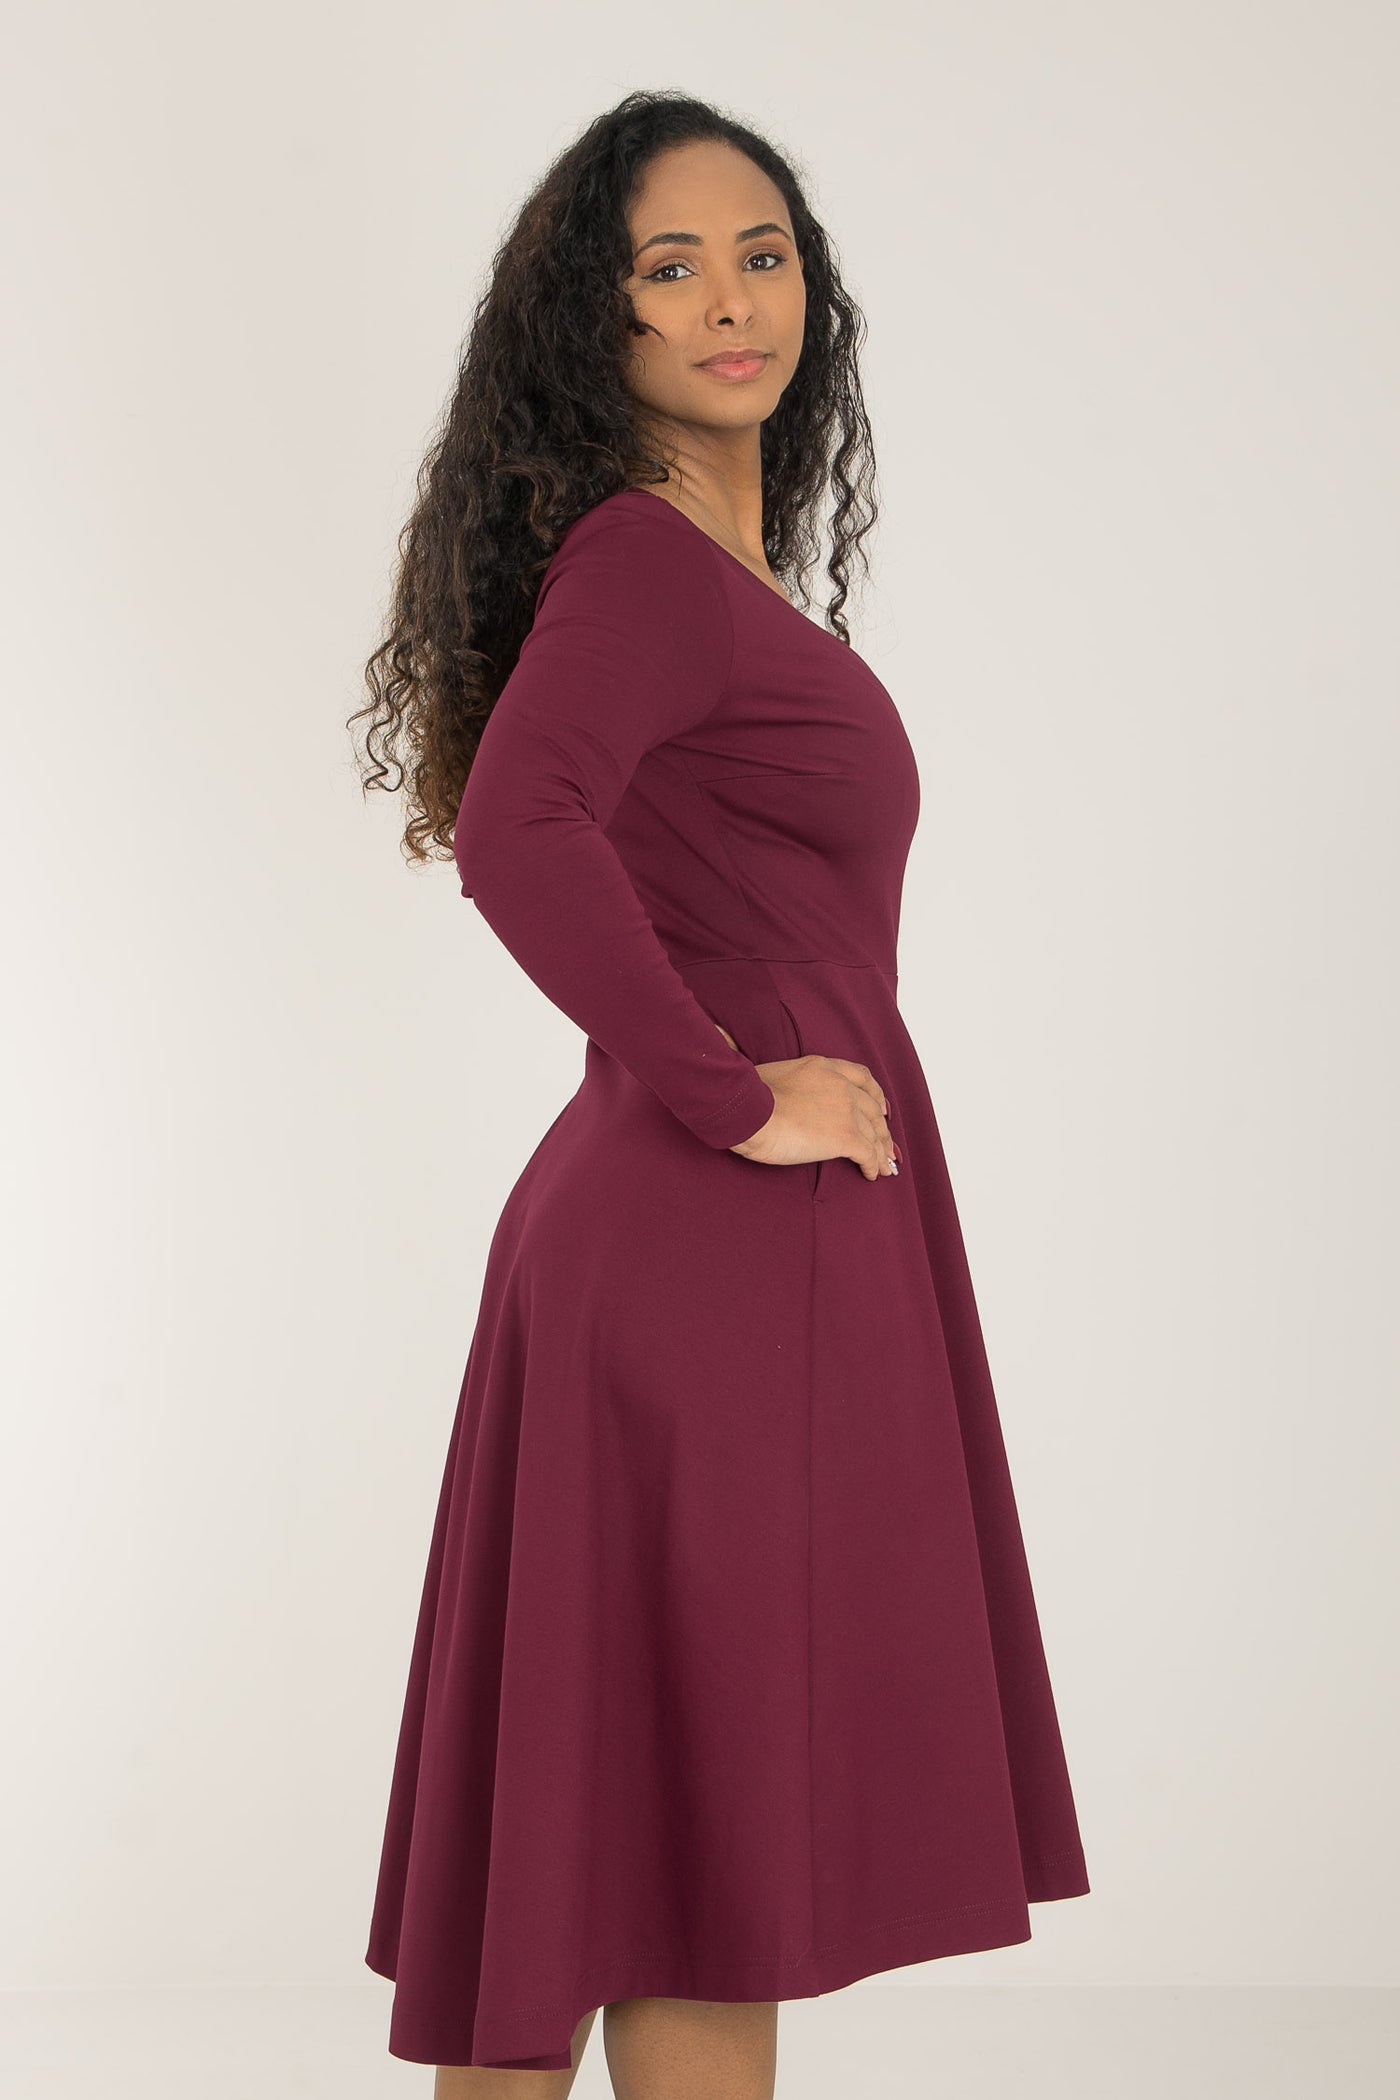 Heavy jersey wide skirt dress - Burgundy - Vinröd, stretchig klänning med vid kjol